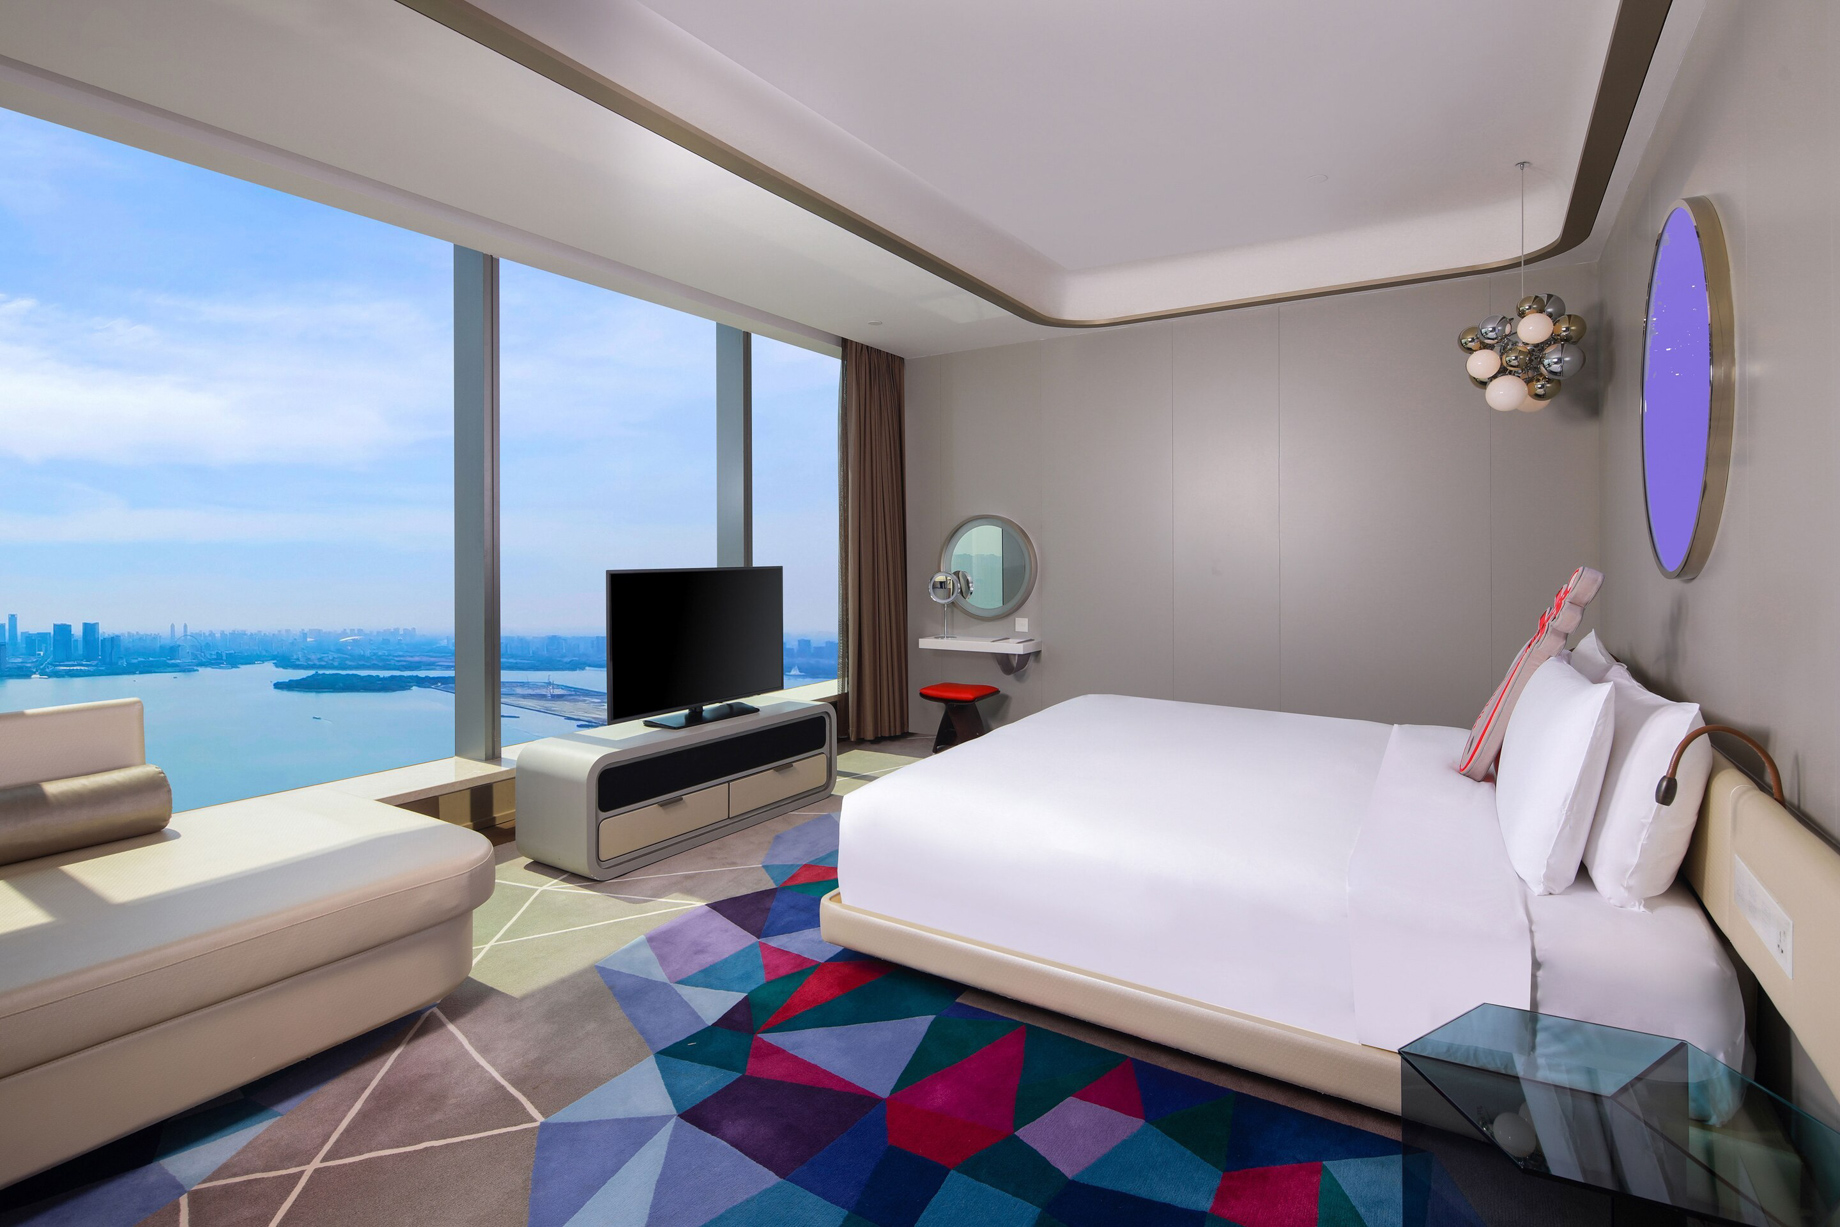 W Suzhou Hotel – Suzhou, China – Fabulous Room